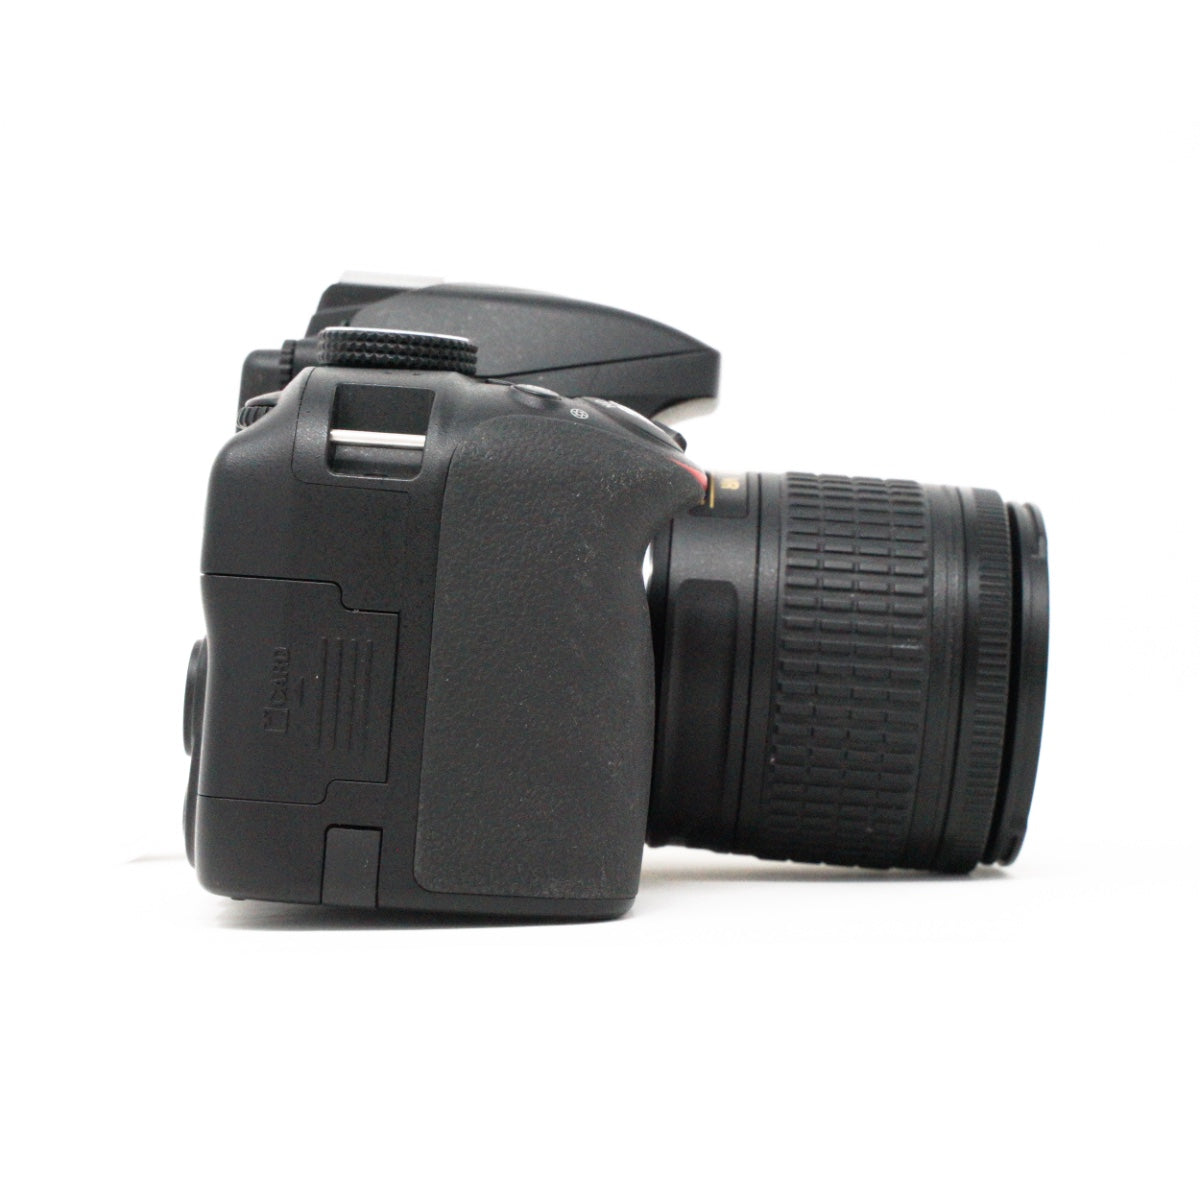 Used Nikon D3300 Digital SLR camera +18-55mm AF-P VR lens